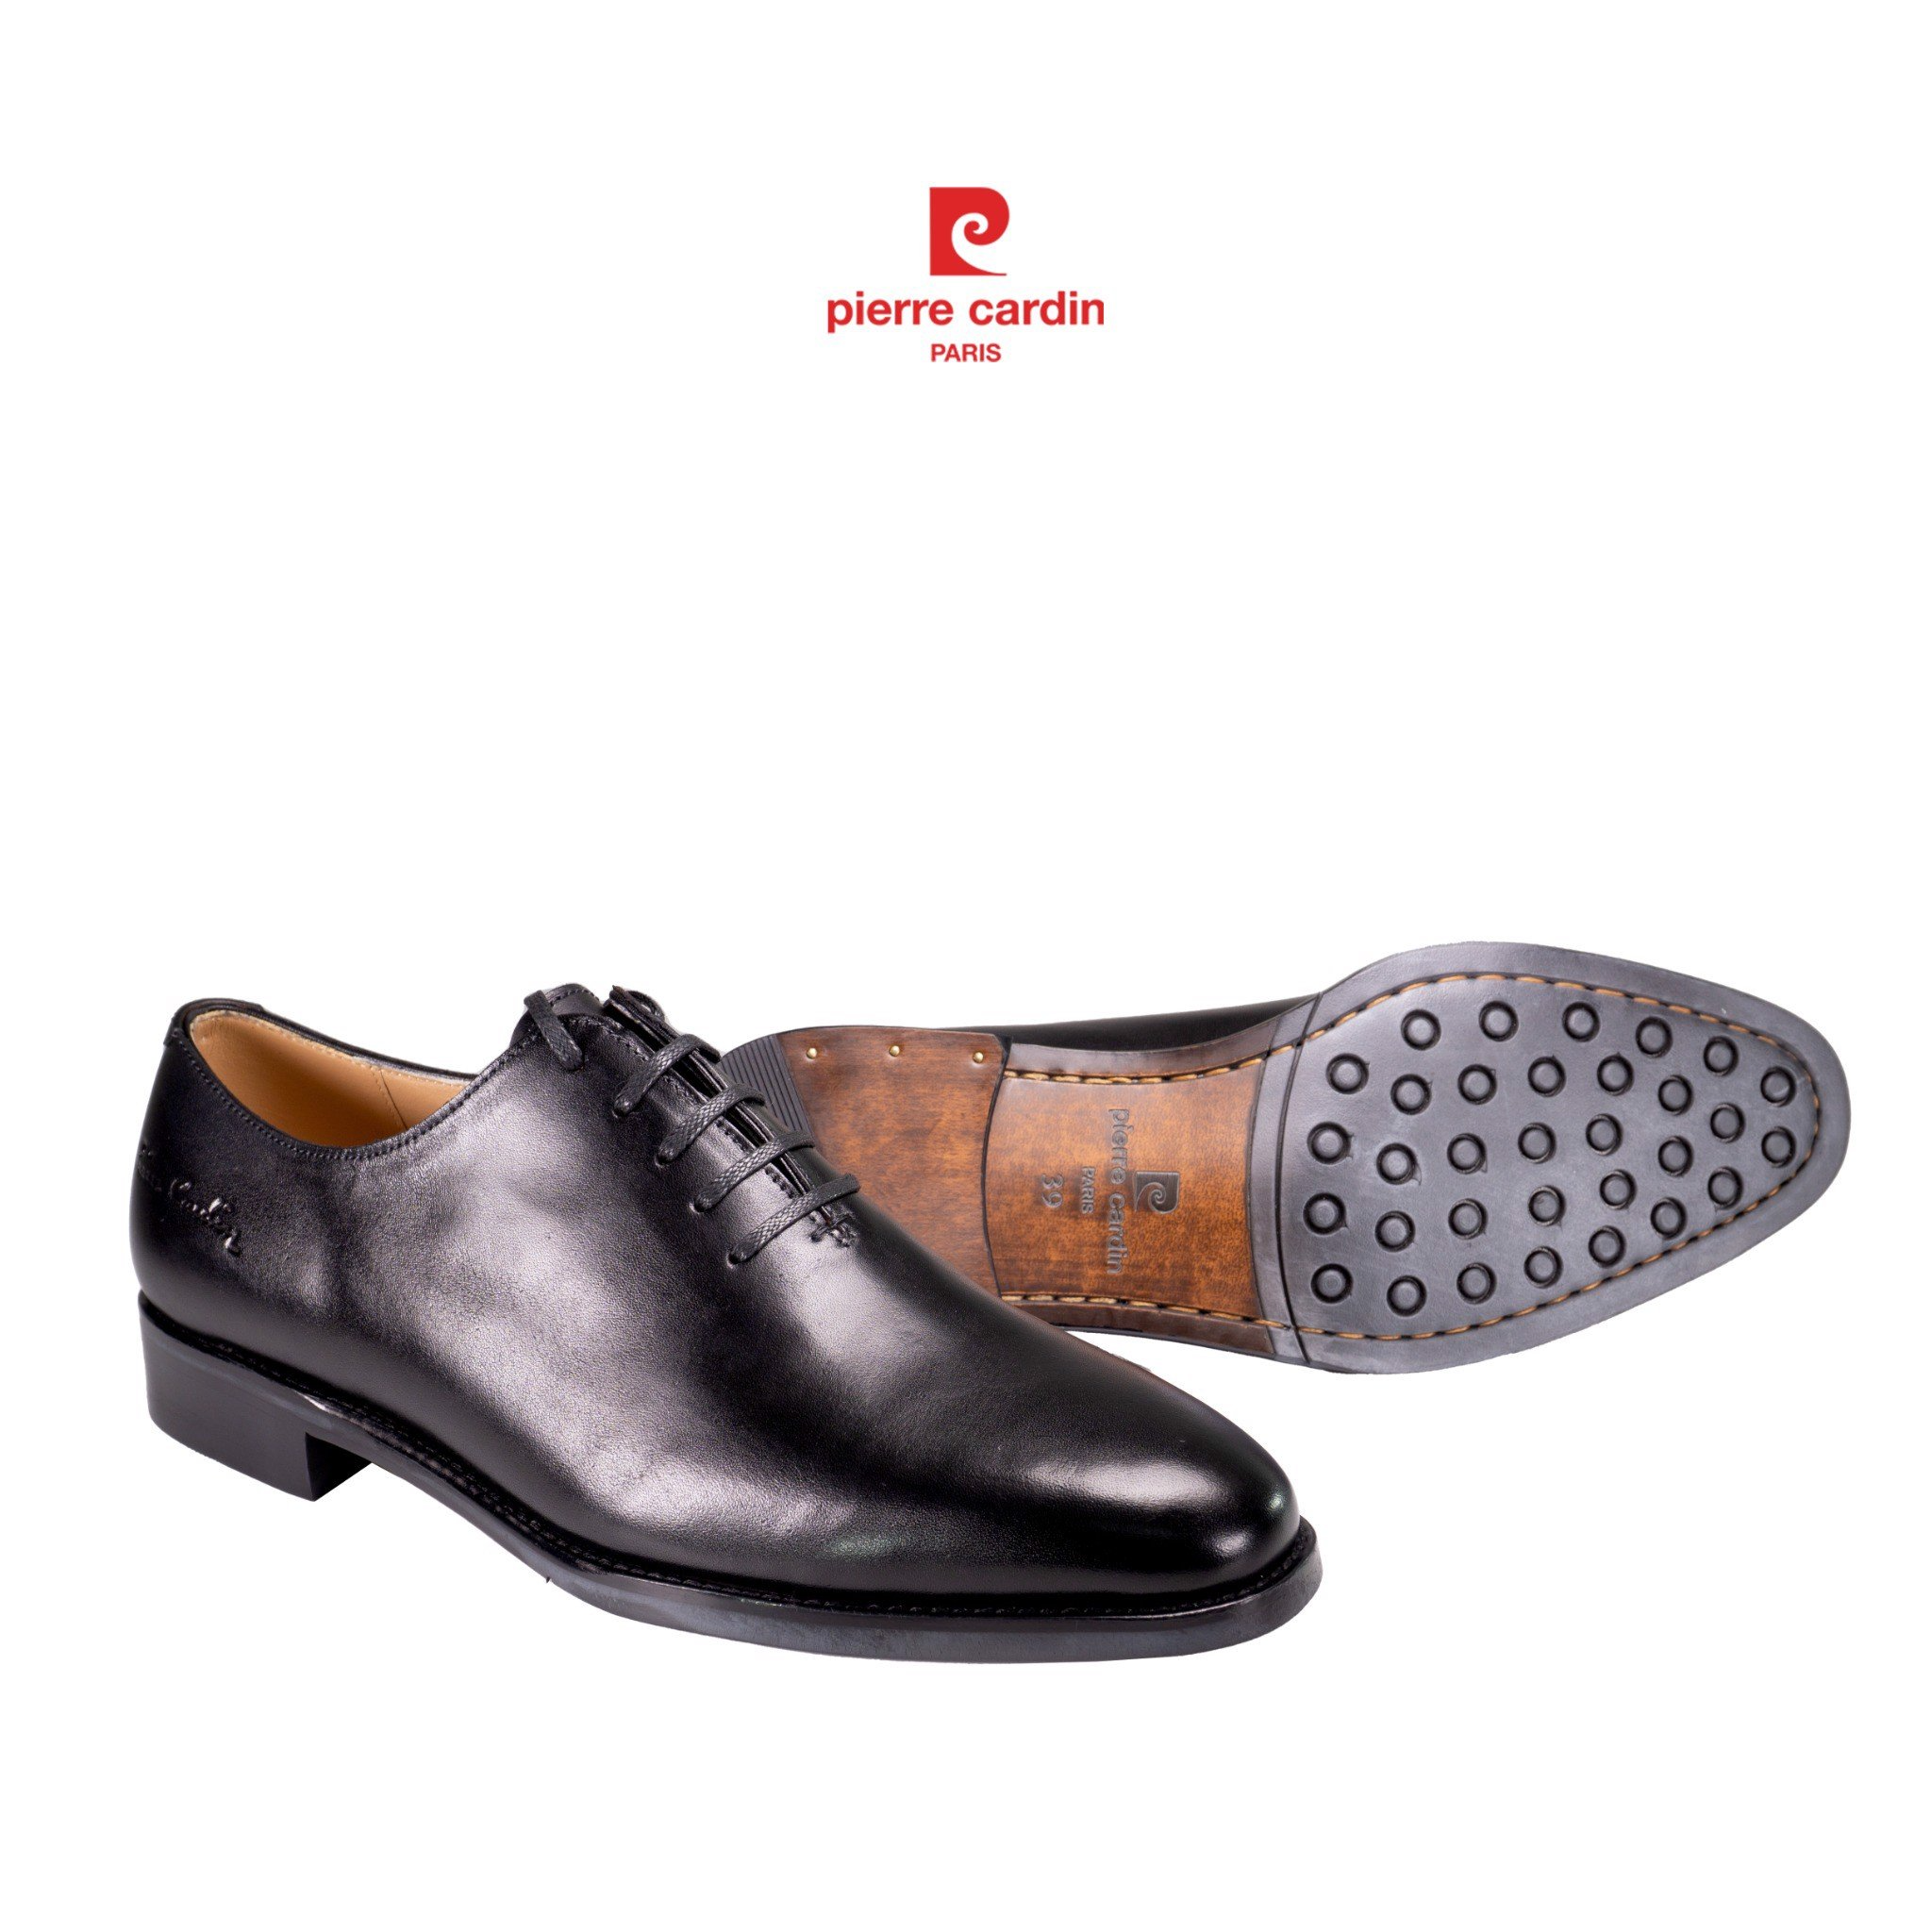 Giày tây nam có dây Pierre Cardin phong cách sang trọng, đẳng cấp, thiết kế cổ điển với chất liệu da bò cao cấp PCMFWL 356